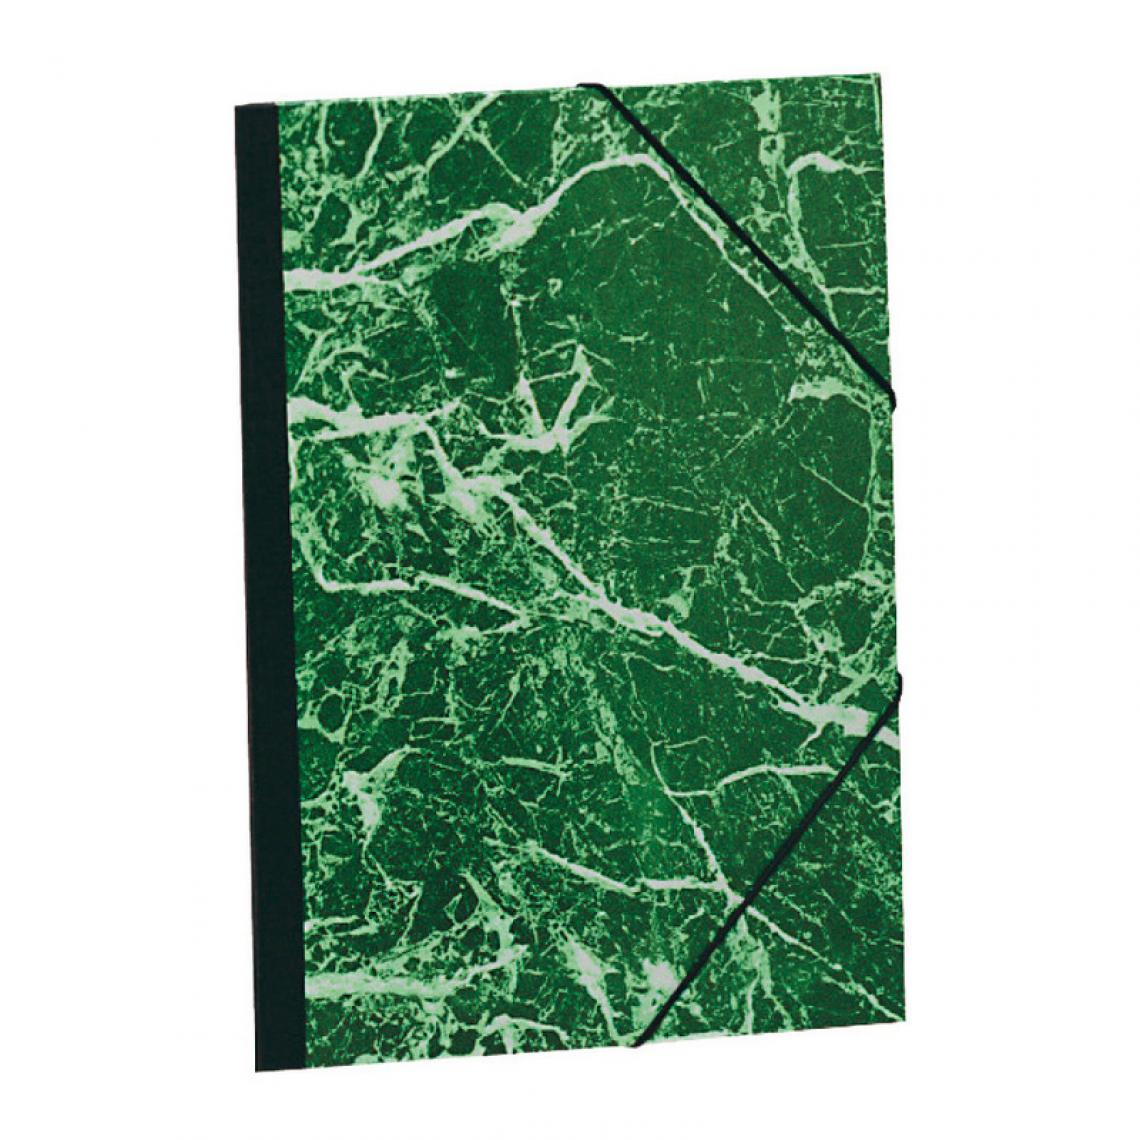 Exacompta - EXACOMPTA Carton à dessin, 370 x 520 mm, carton,vert / blanc () - Outils et accessoires du peintre